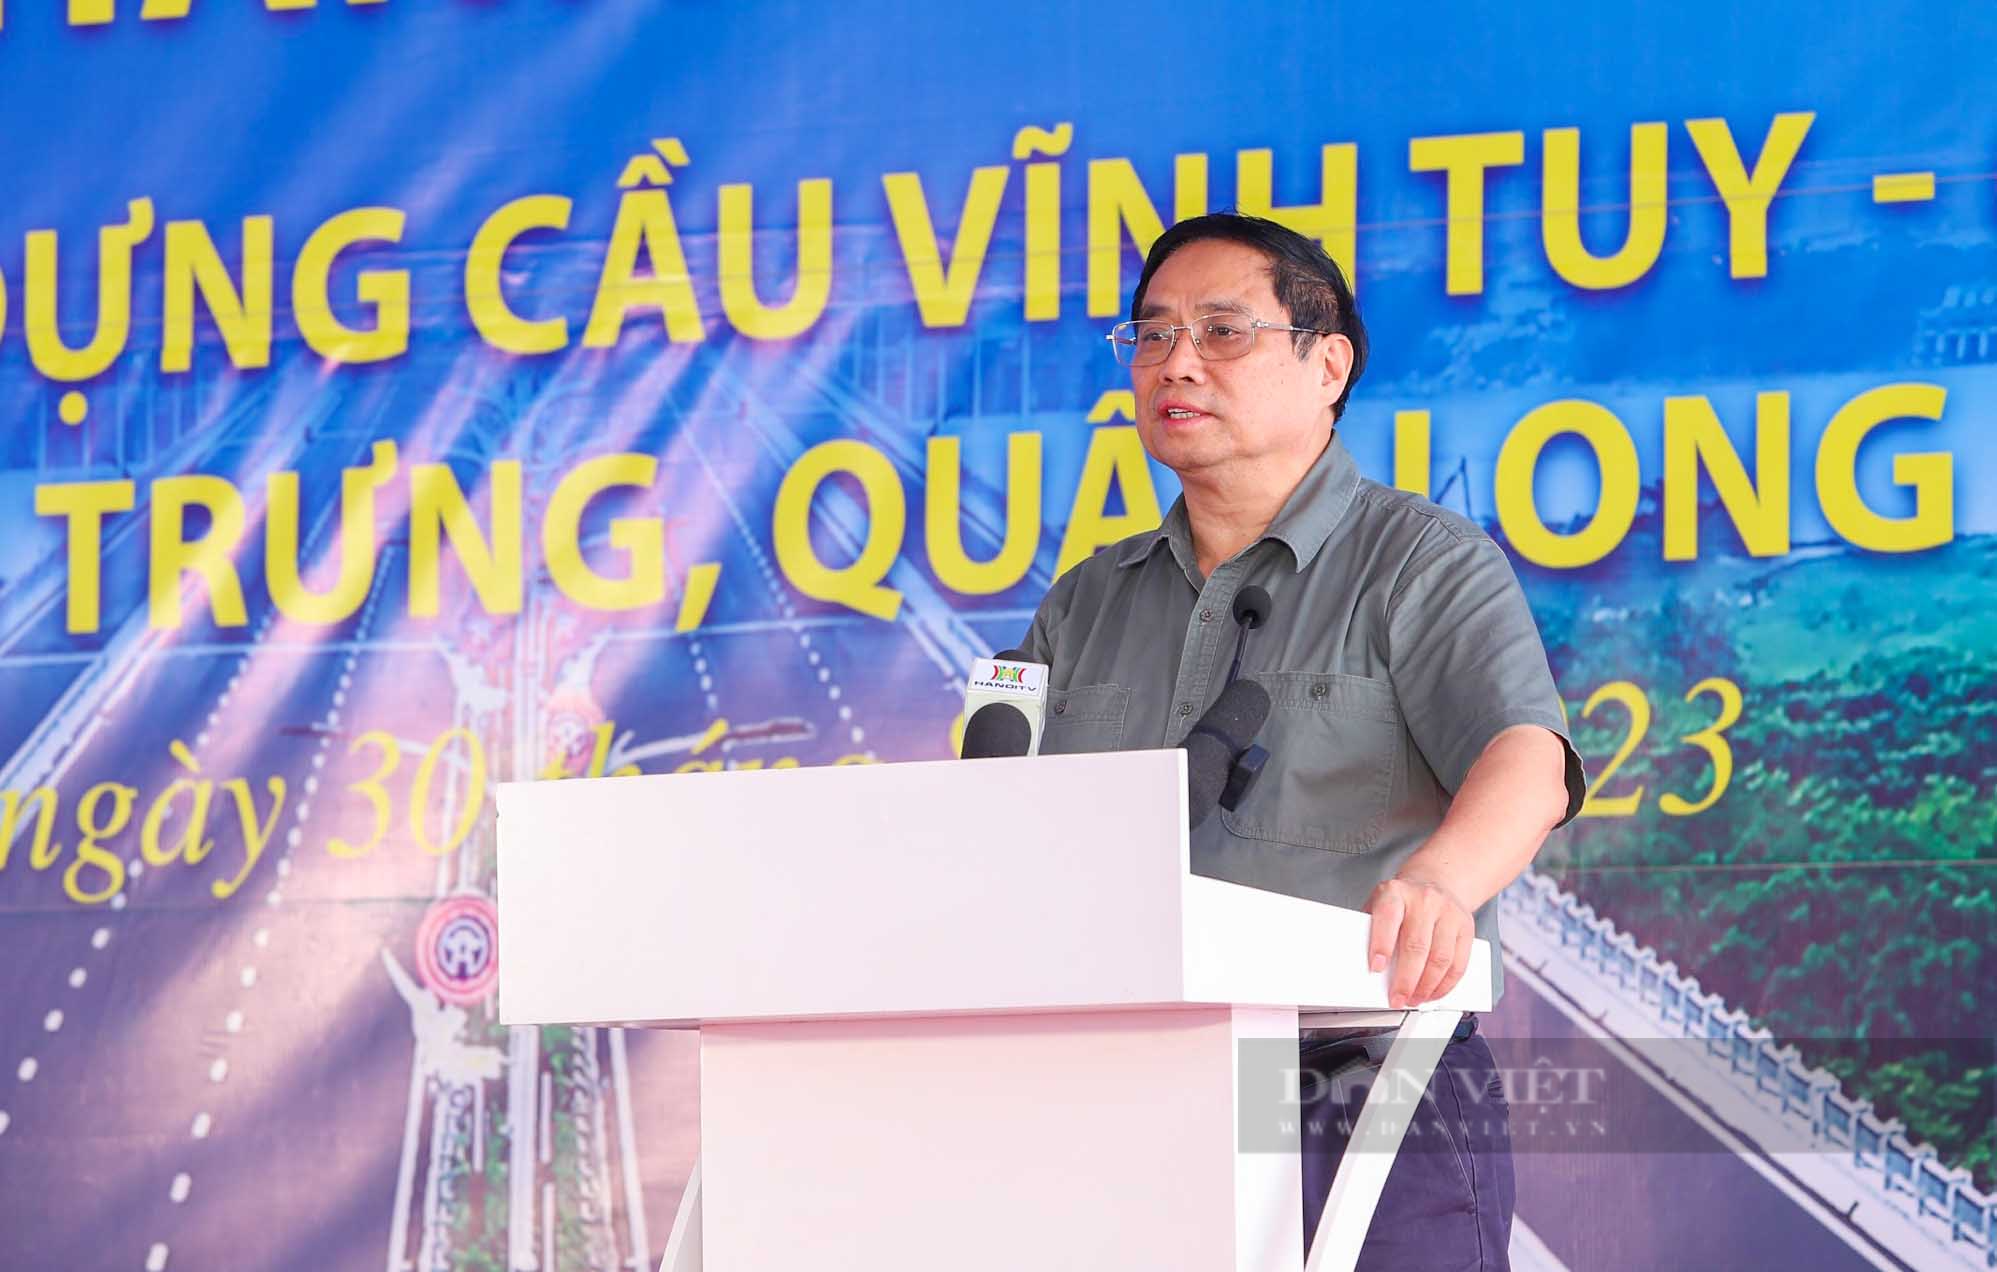 Thủ tướng Chính phủ Phạm Minh Chính tới dự lễ khánh thành cầu Vĩnh Tuy giai đoạn 2 - Ảnh 3.